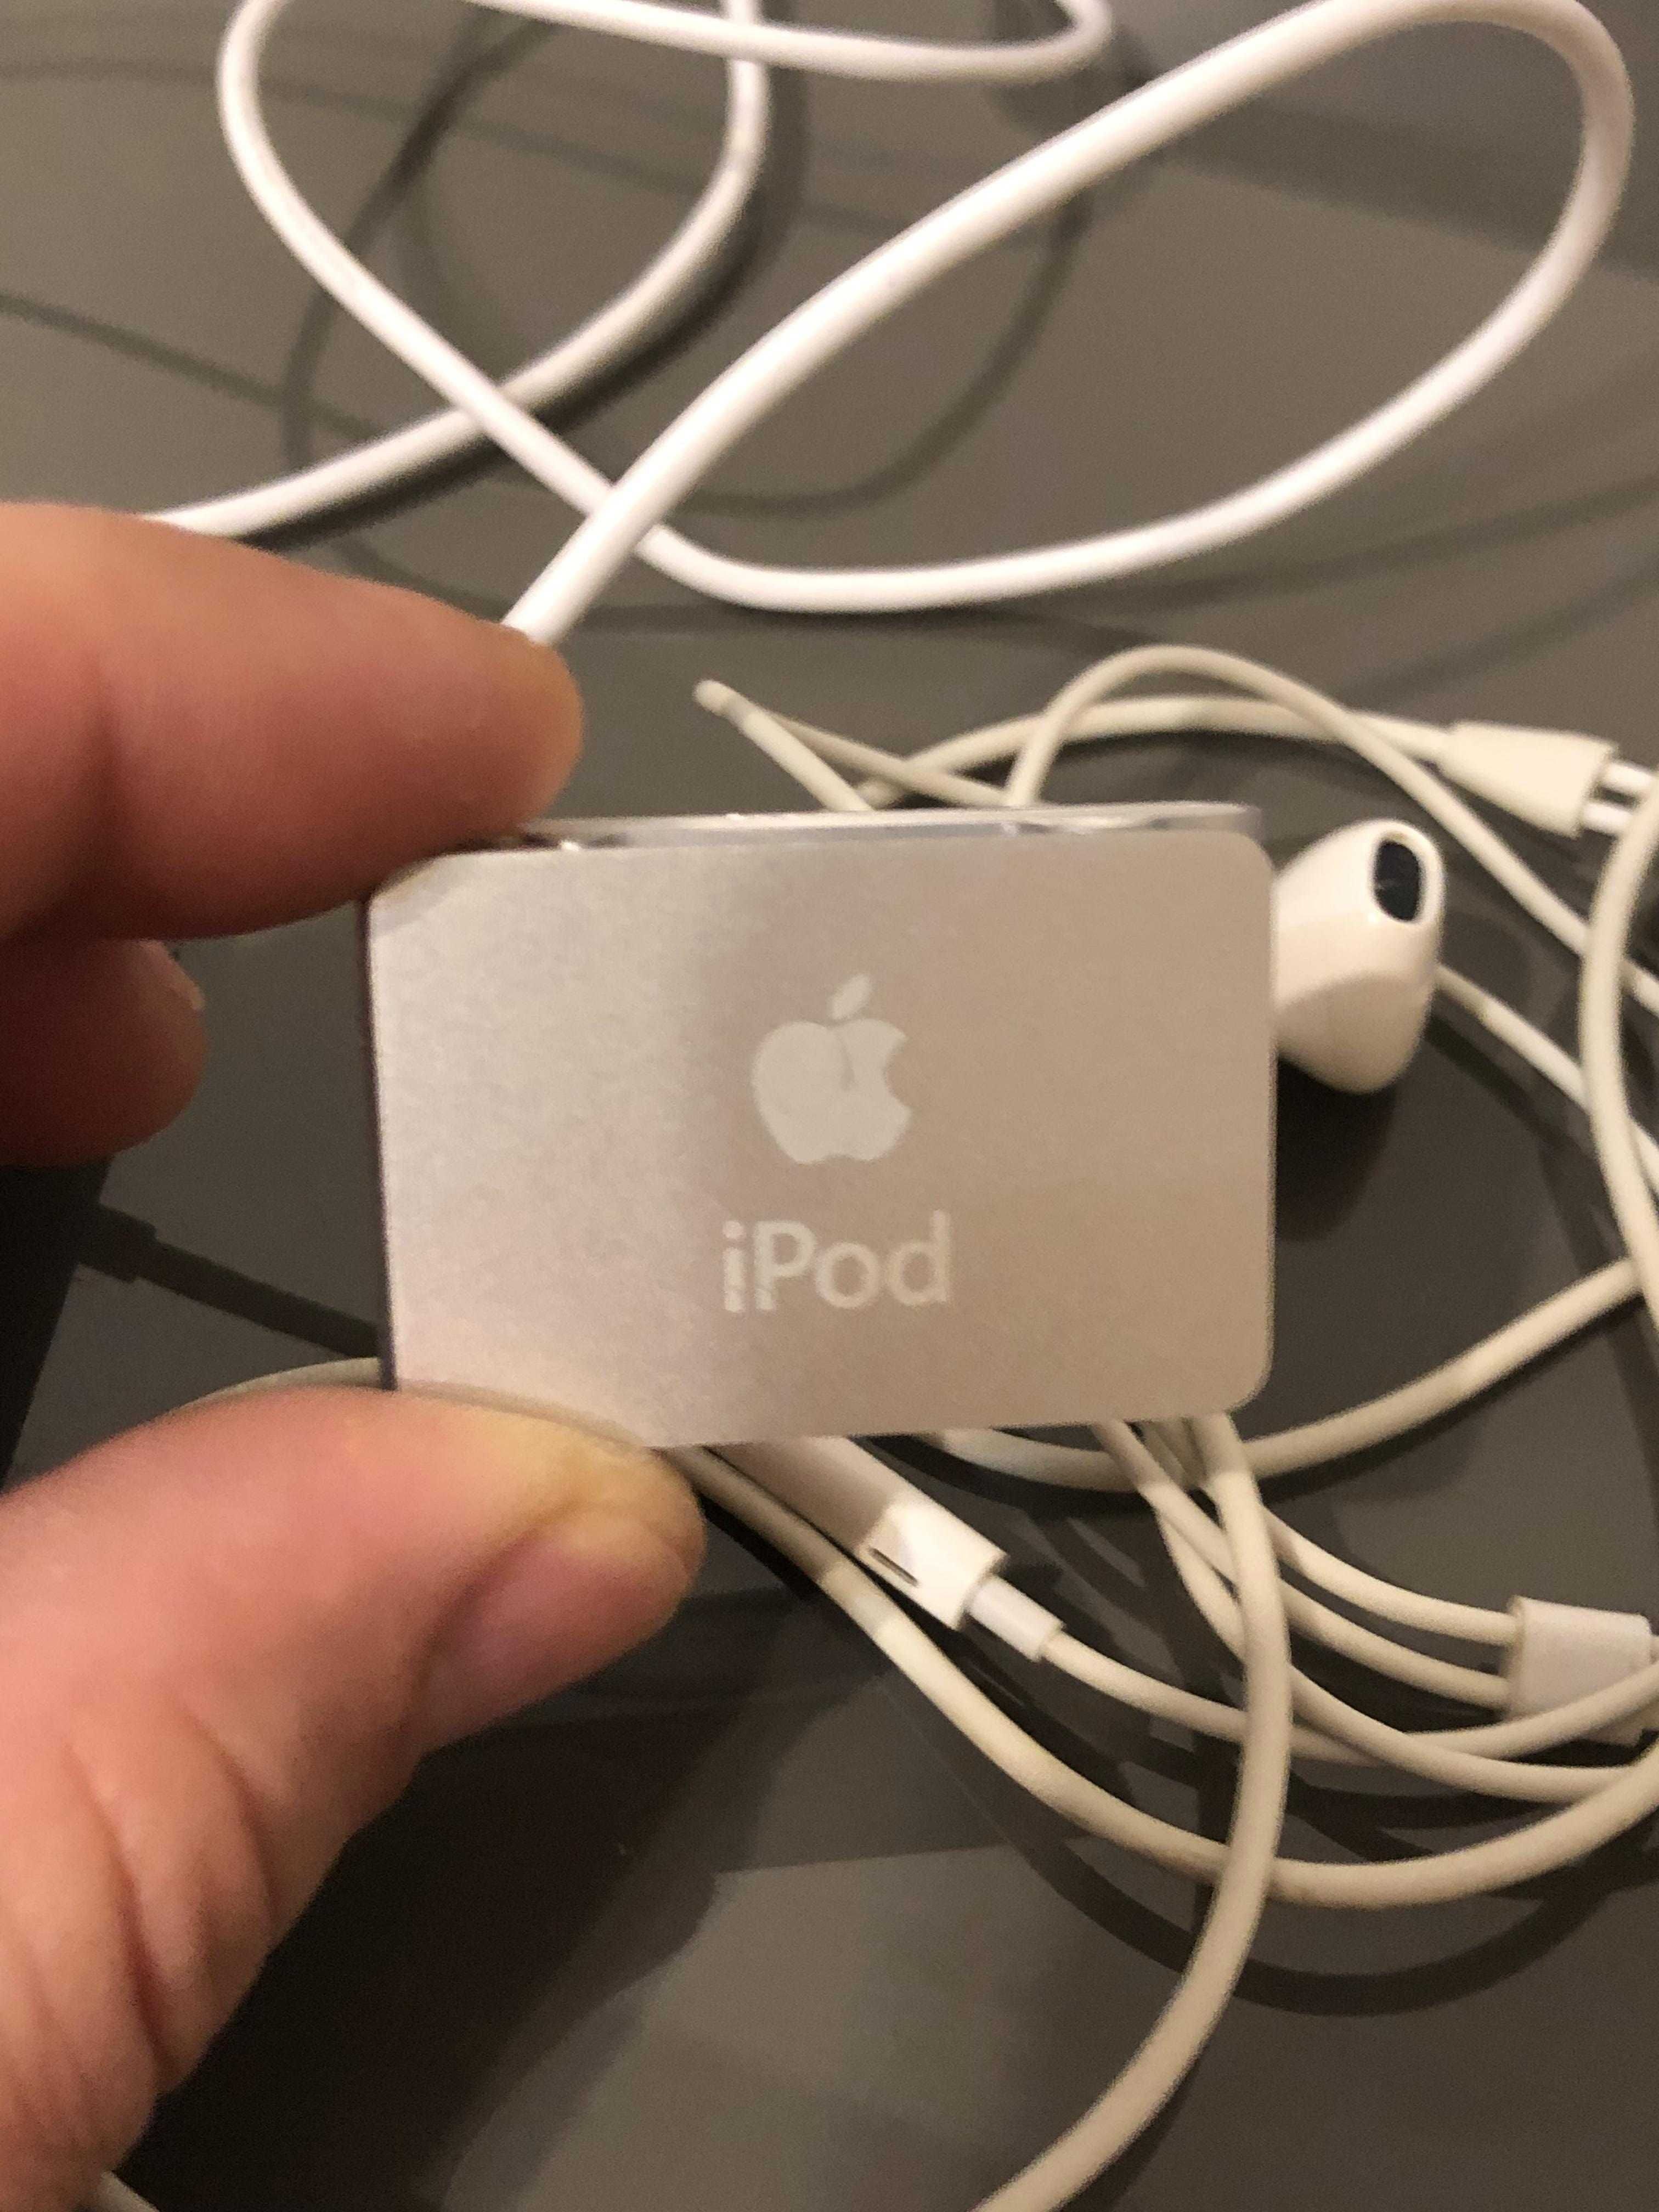 Apple iPod Shuffle 1G